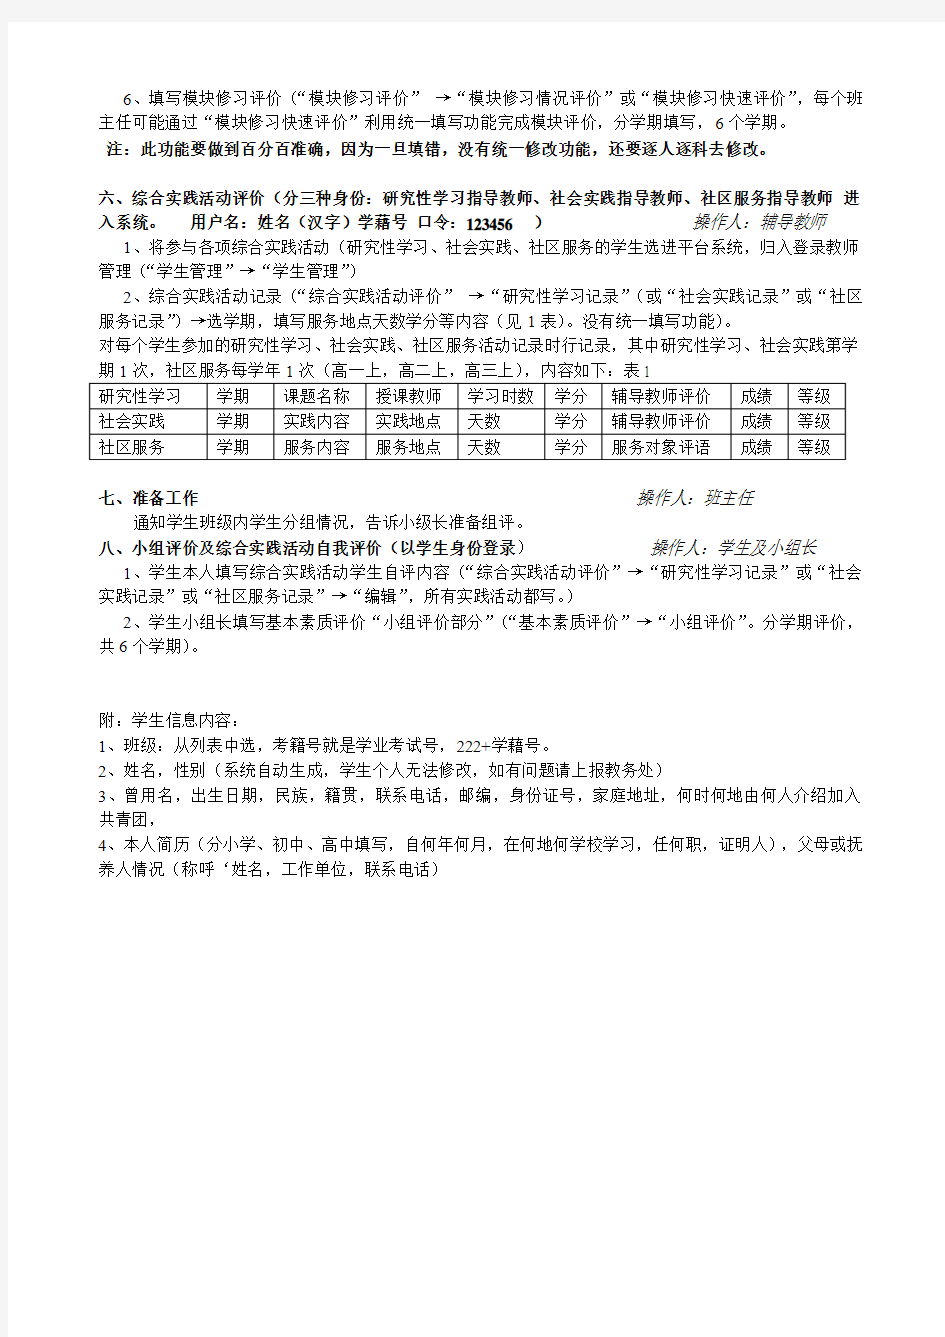 天津市普通高中学生综合素质评价系统使用过程